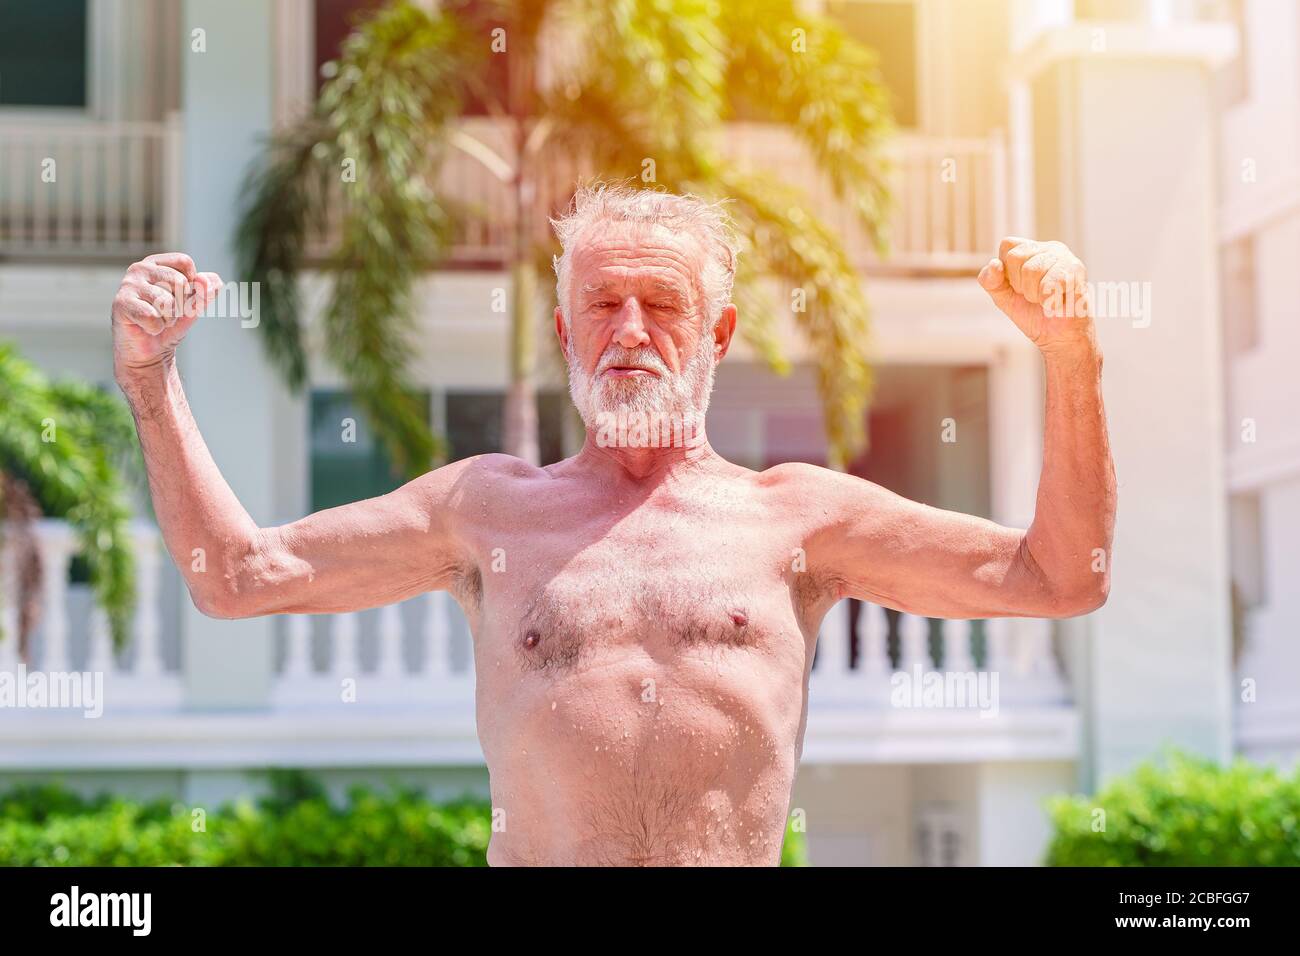 Un homme fort et en bonne santé montre une expression musculaire et ajustée à l'extérieur Banque D'Images